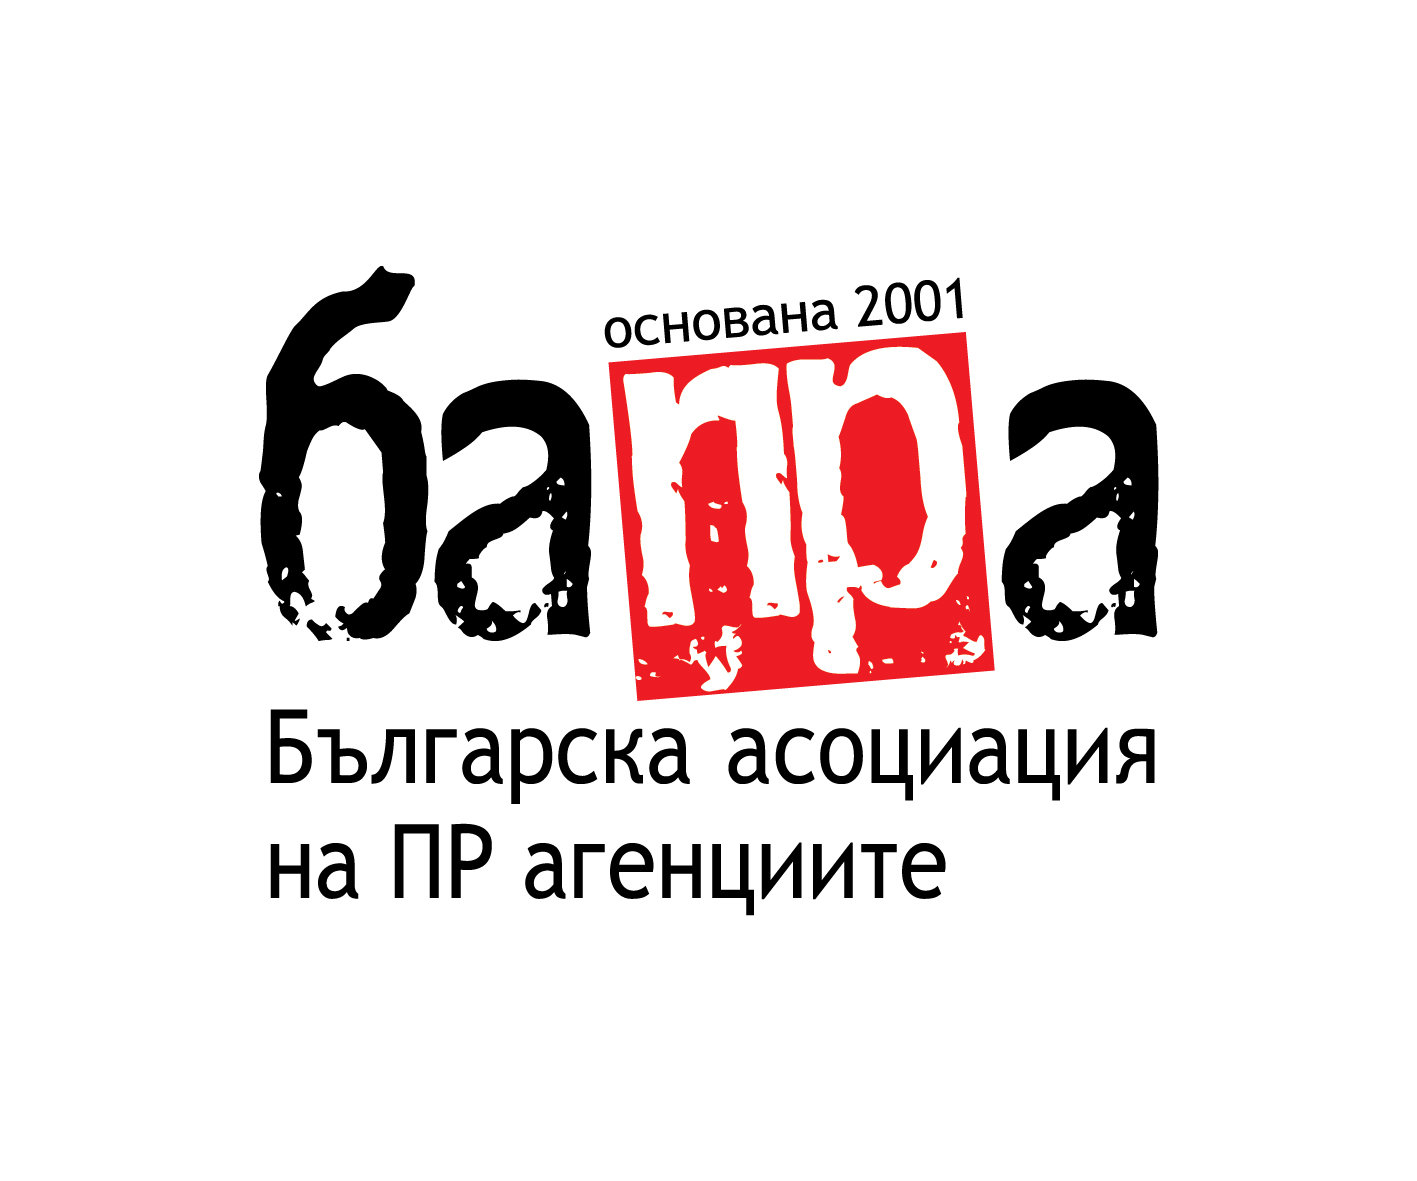 Българската асоциация на пиар агенциите (БАПРА) предложи експертна помощ на властите,